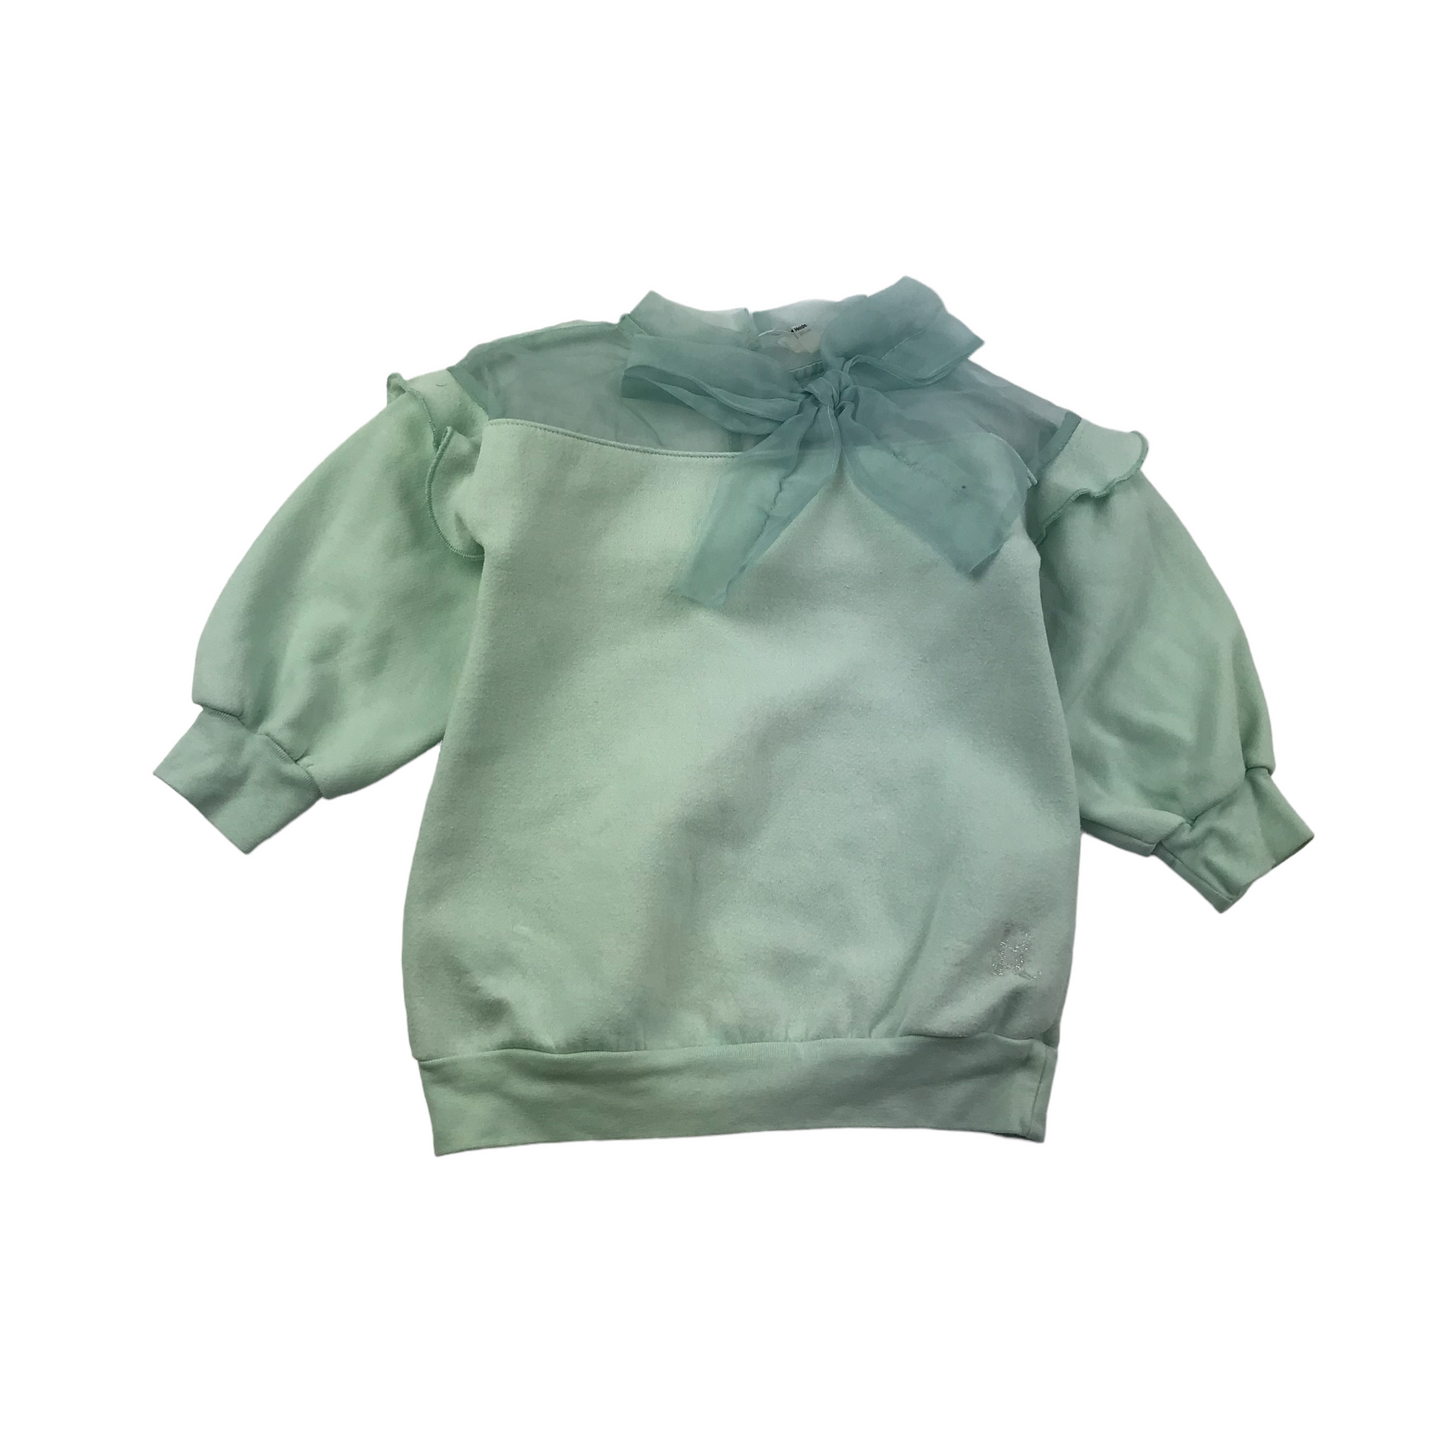 River Island Mint Green Sweater Mesh Jumper Age 4